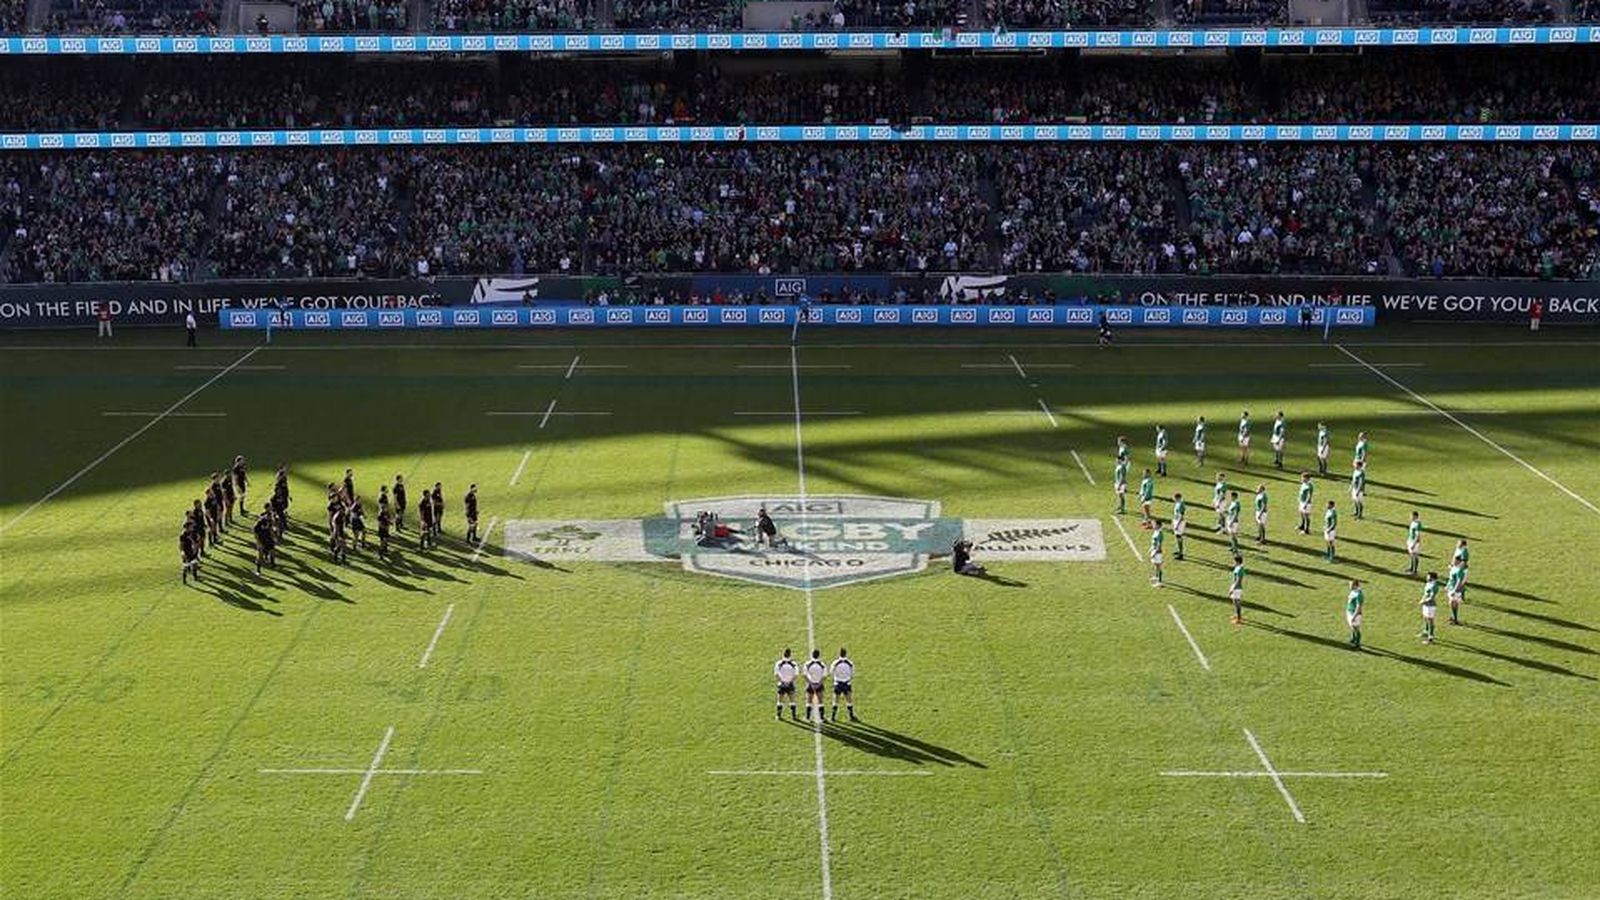 Foto: La 'haka' de los All Blacks ante el '8' irlandés en honor a Anthony Foley (Irish Rugby).